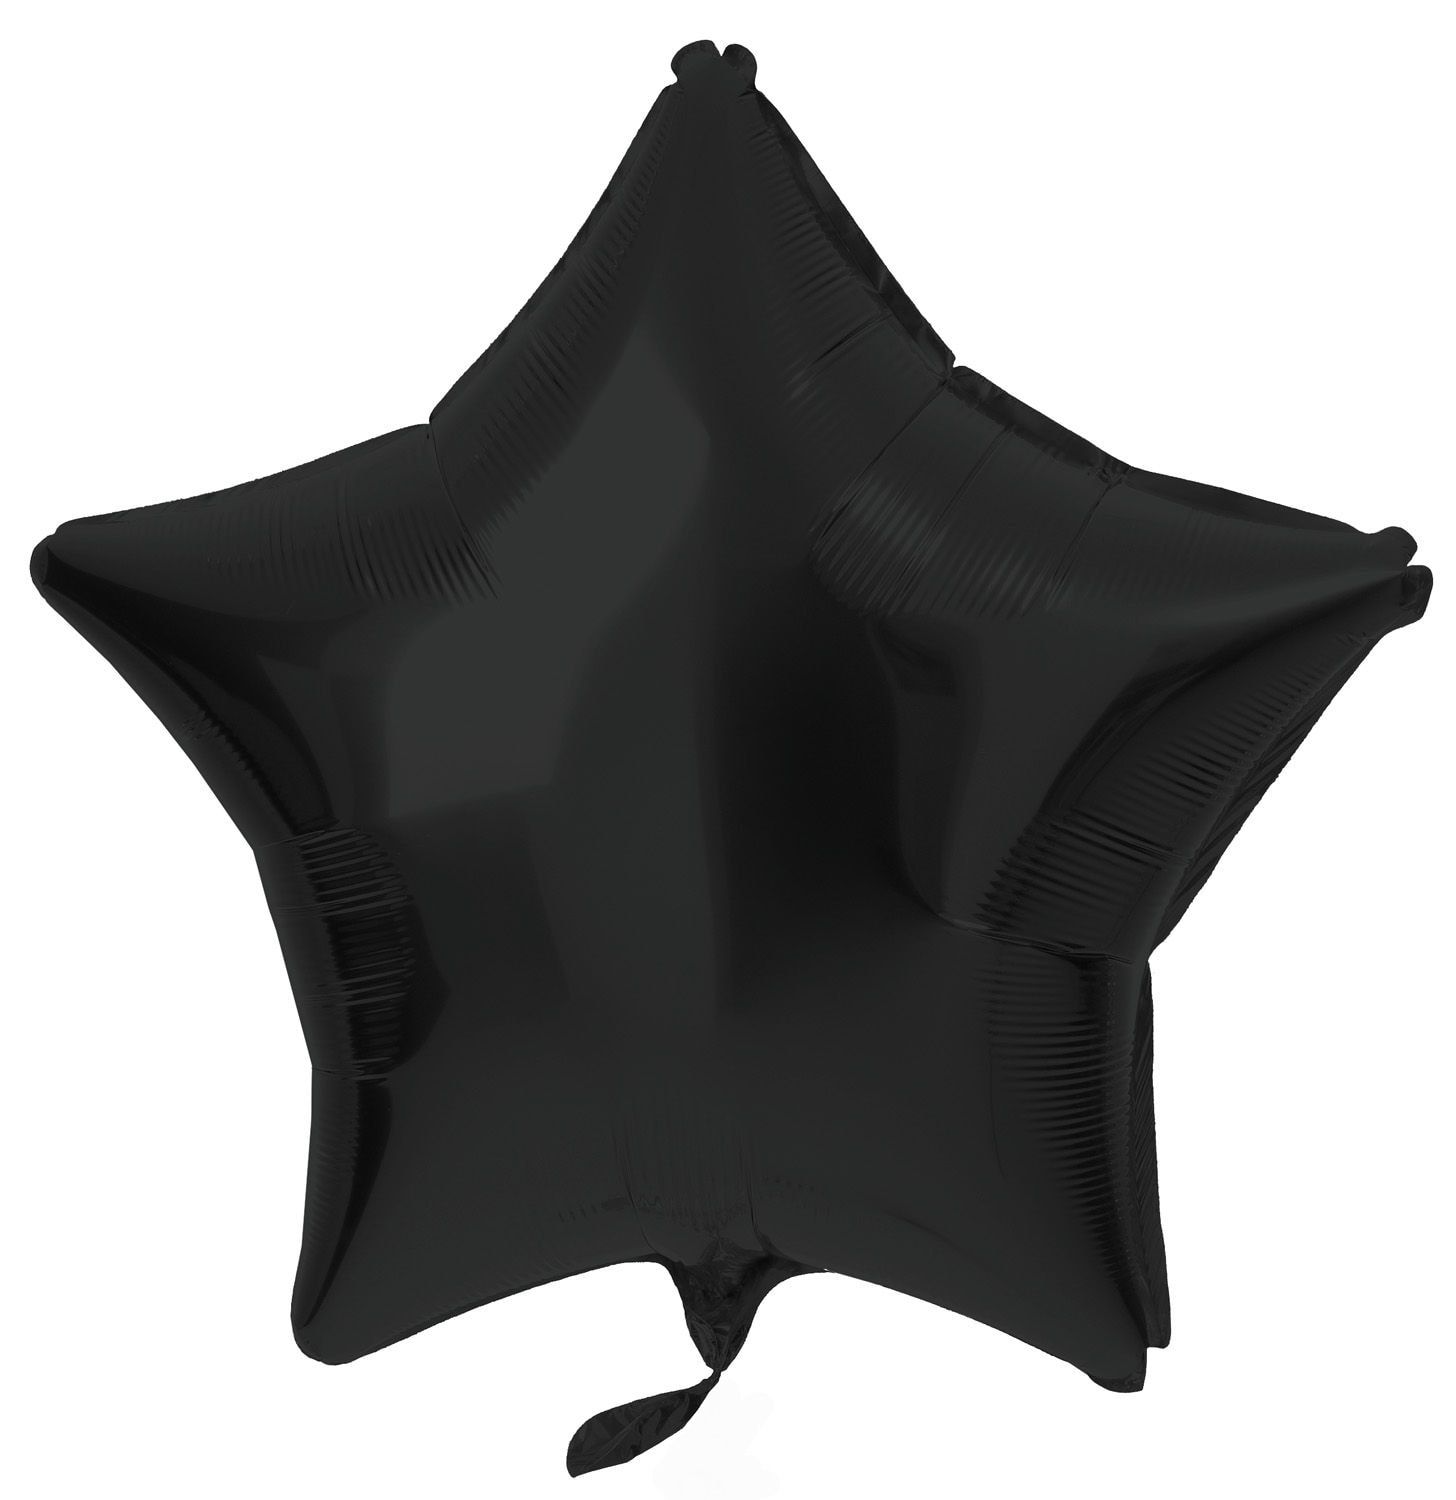 Folieballon stervorm zwart